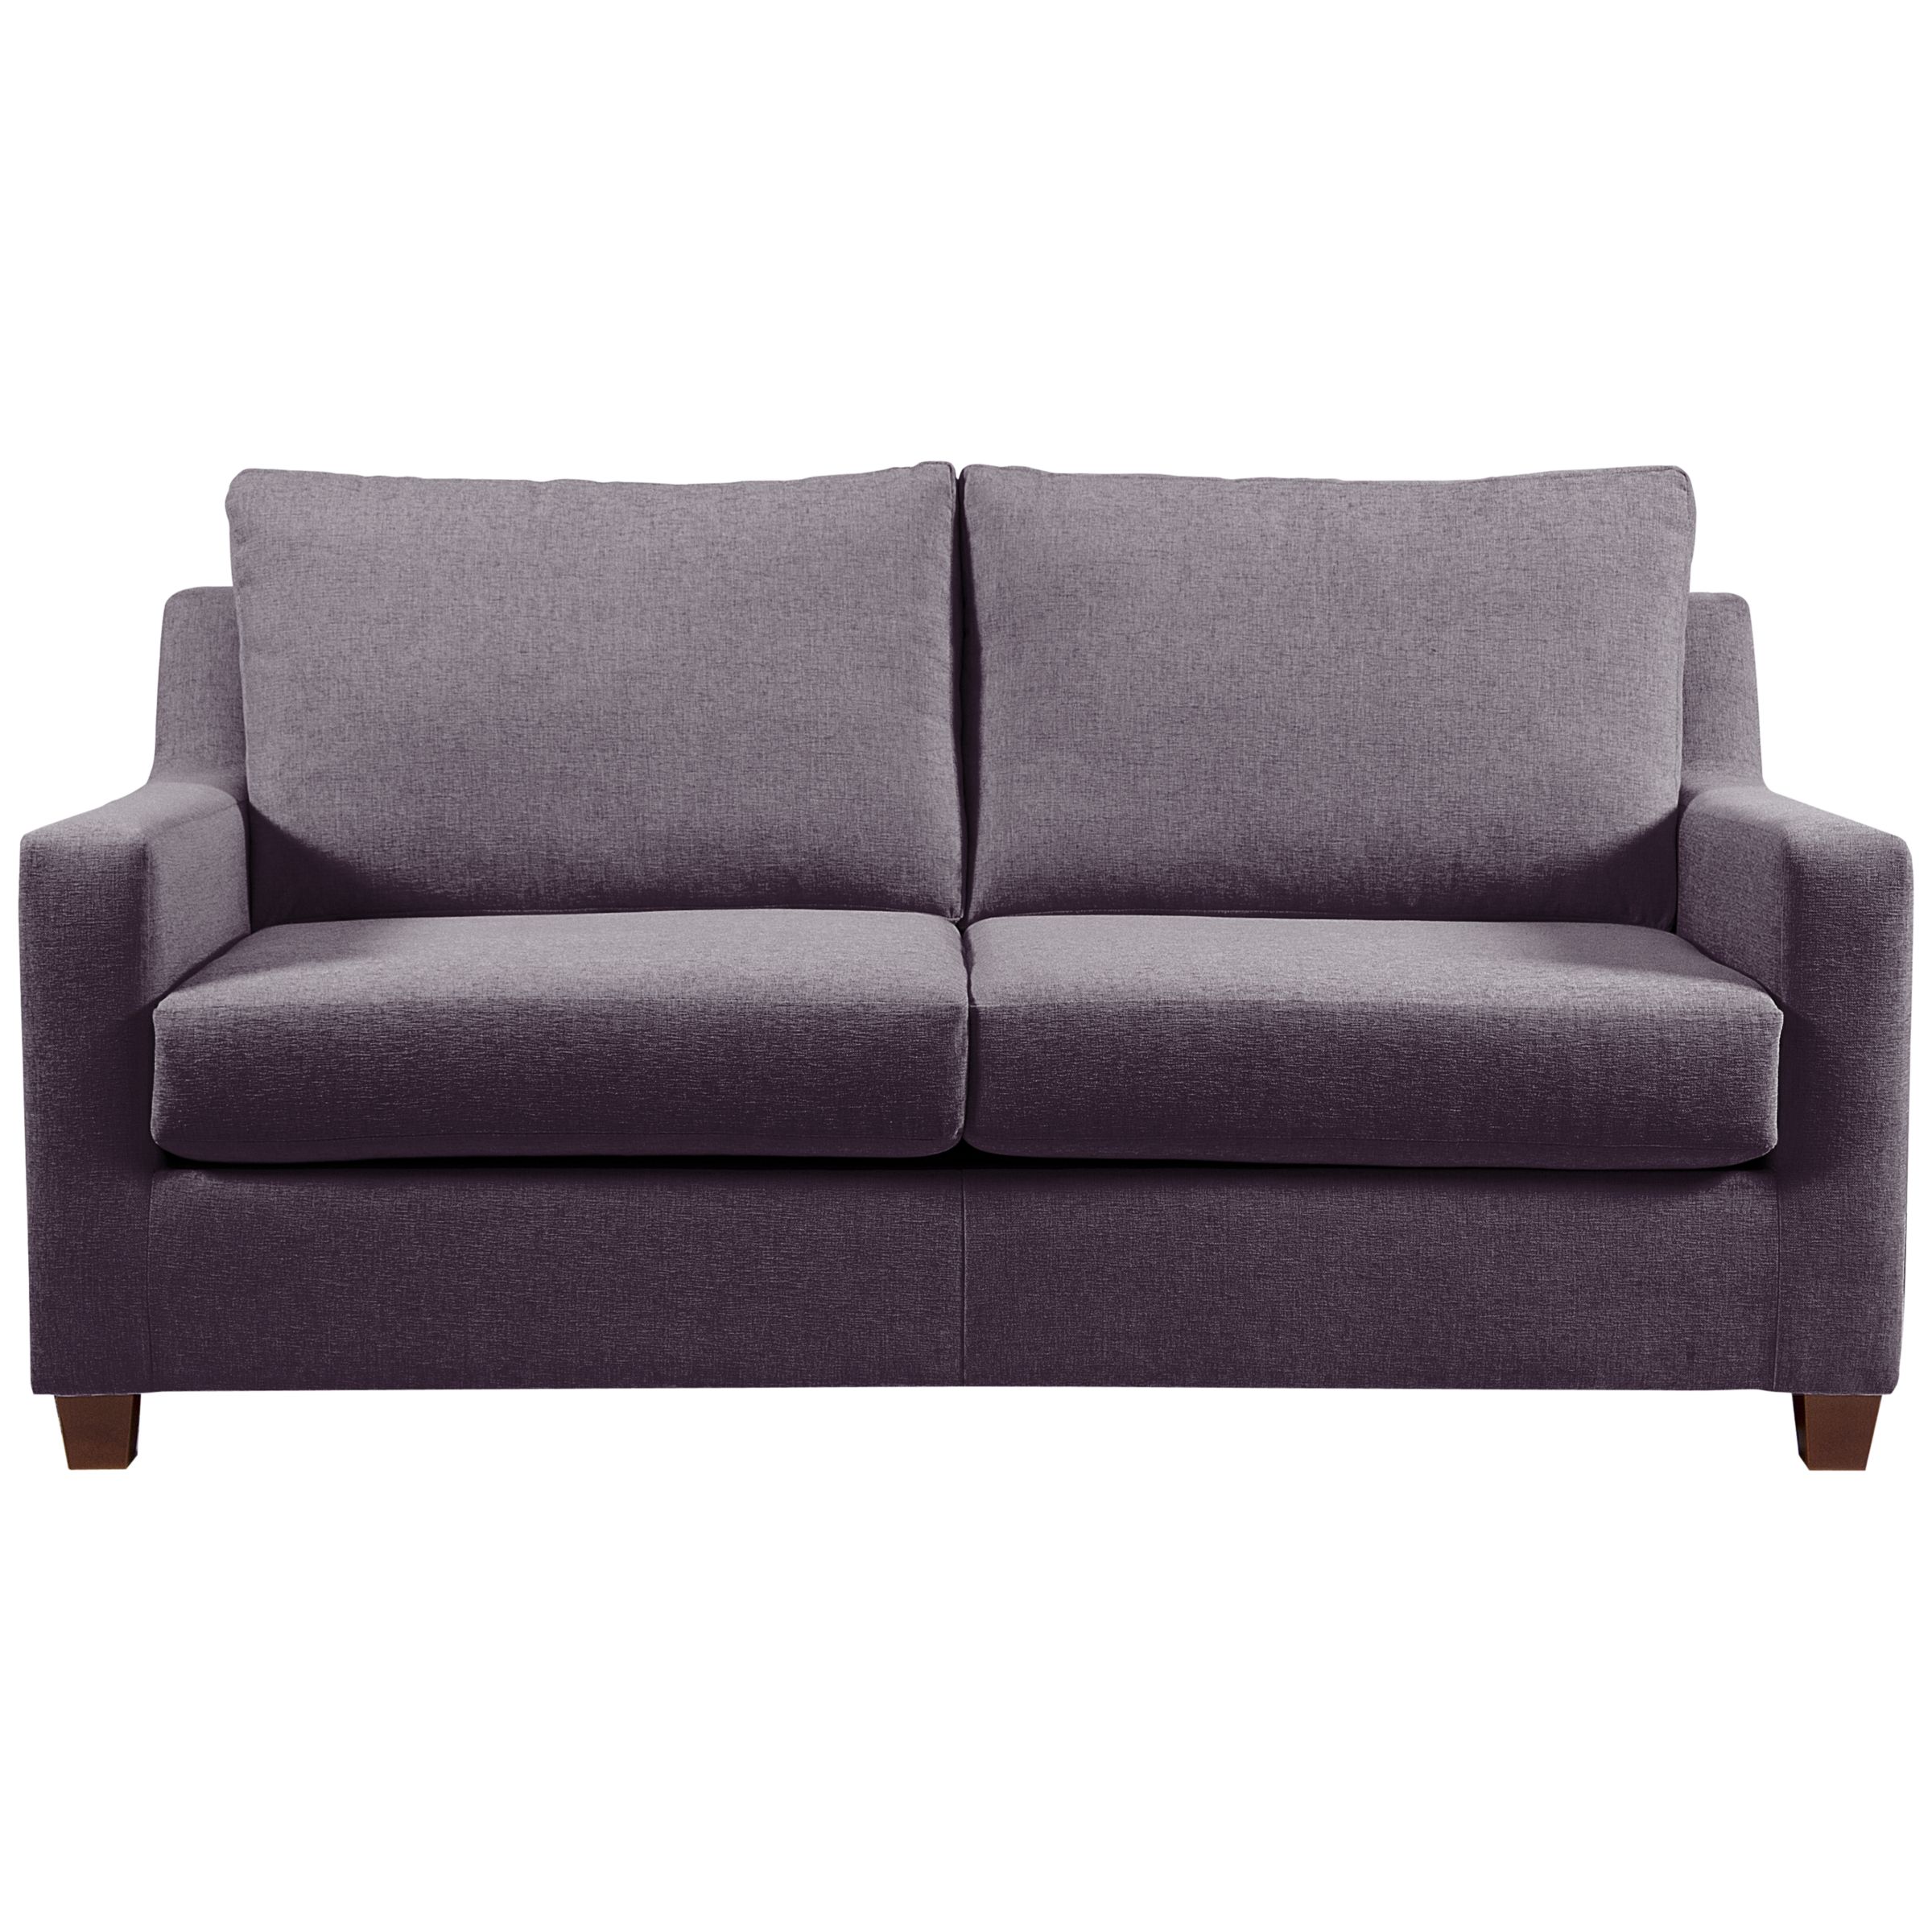 John Lewis Bizet Medium Sofa Beds with Open Sprung Mattress, Purple, width 178cm